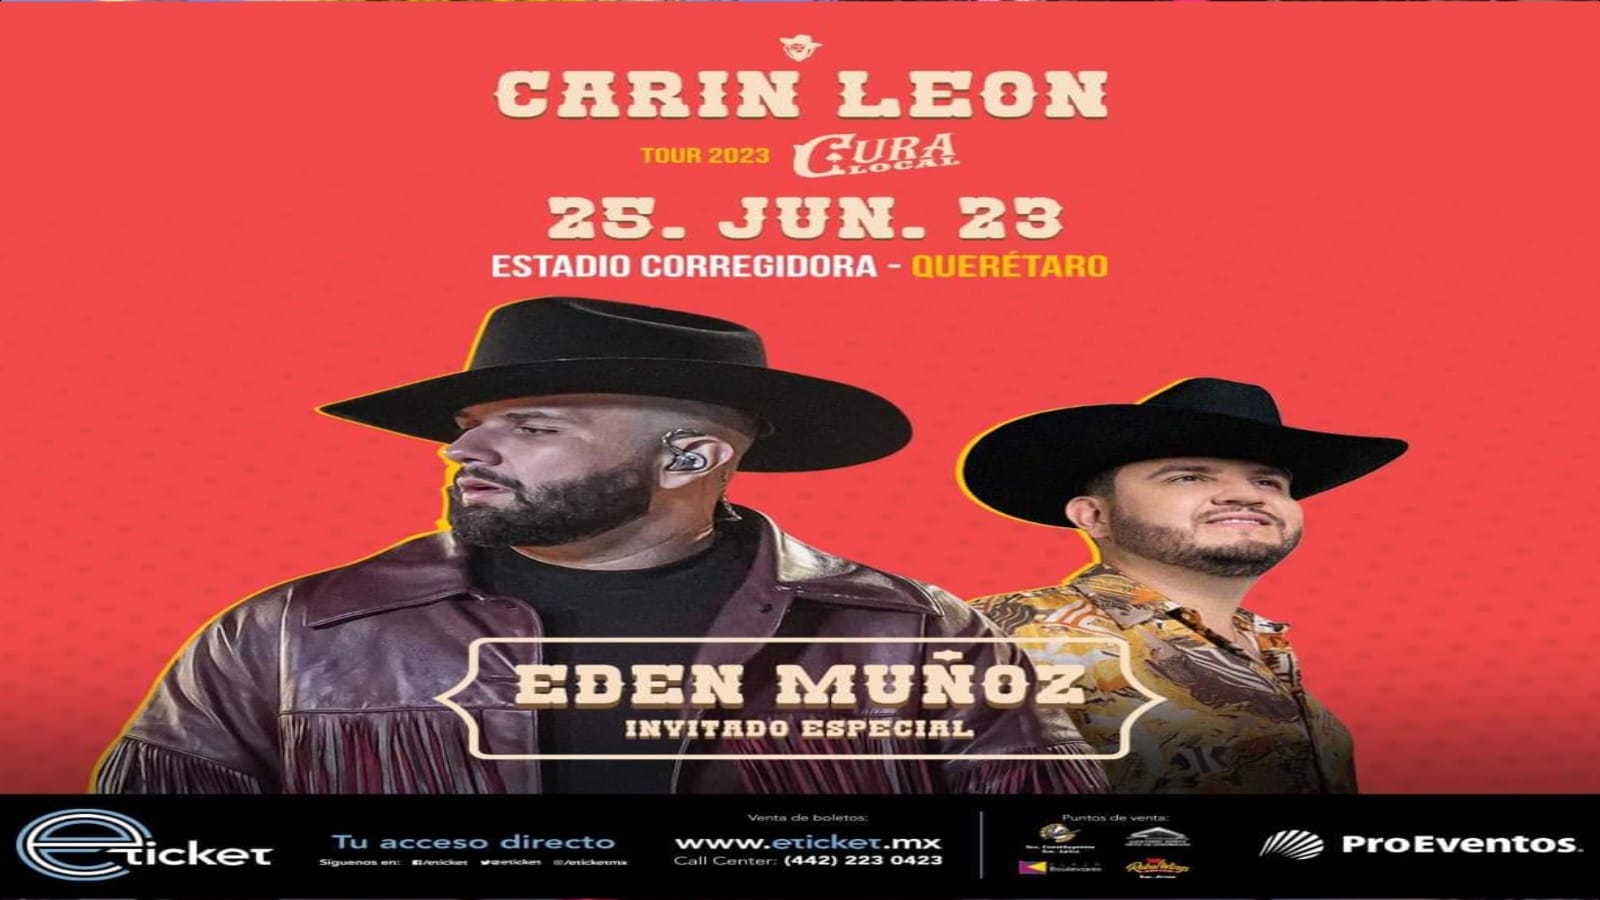 Acudirán 25 mil personas al concierto de Carin León el 25 de junio